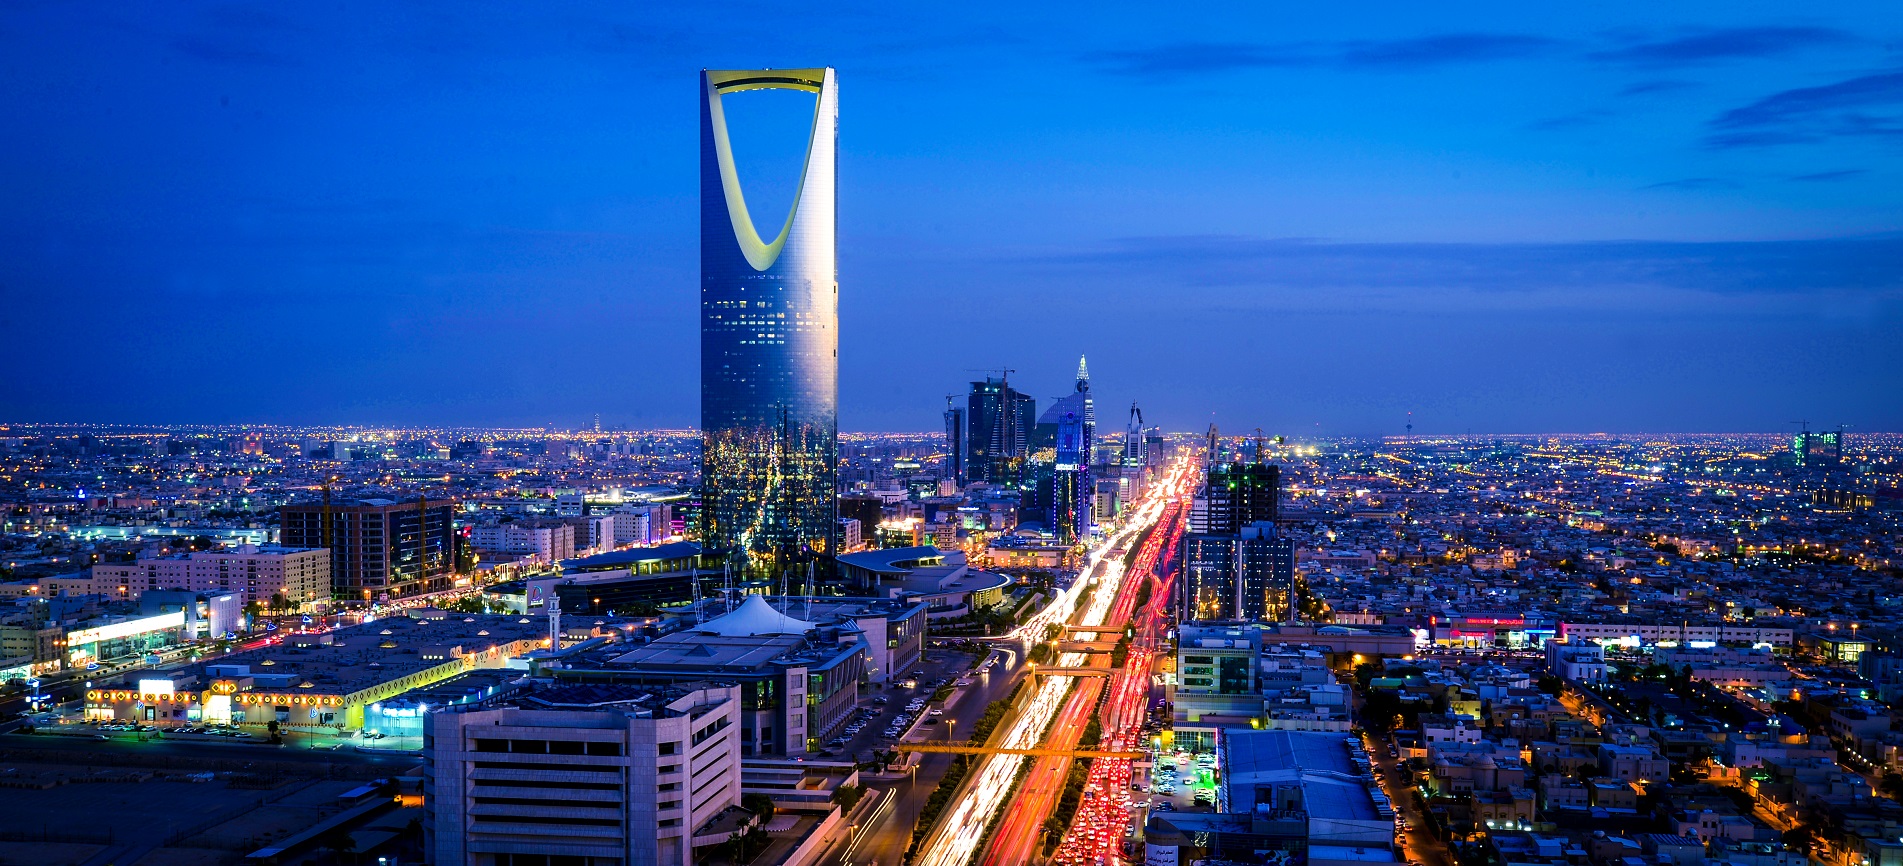 اهم الاماكن السياحيه في الرياض